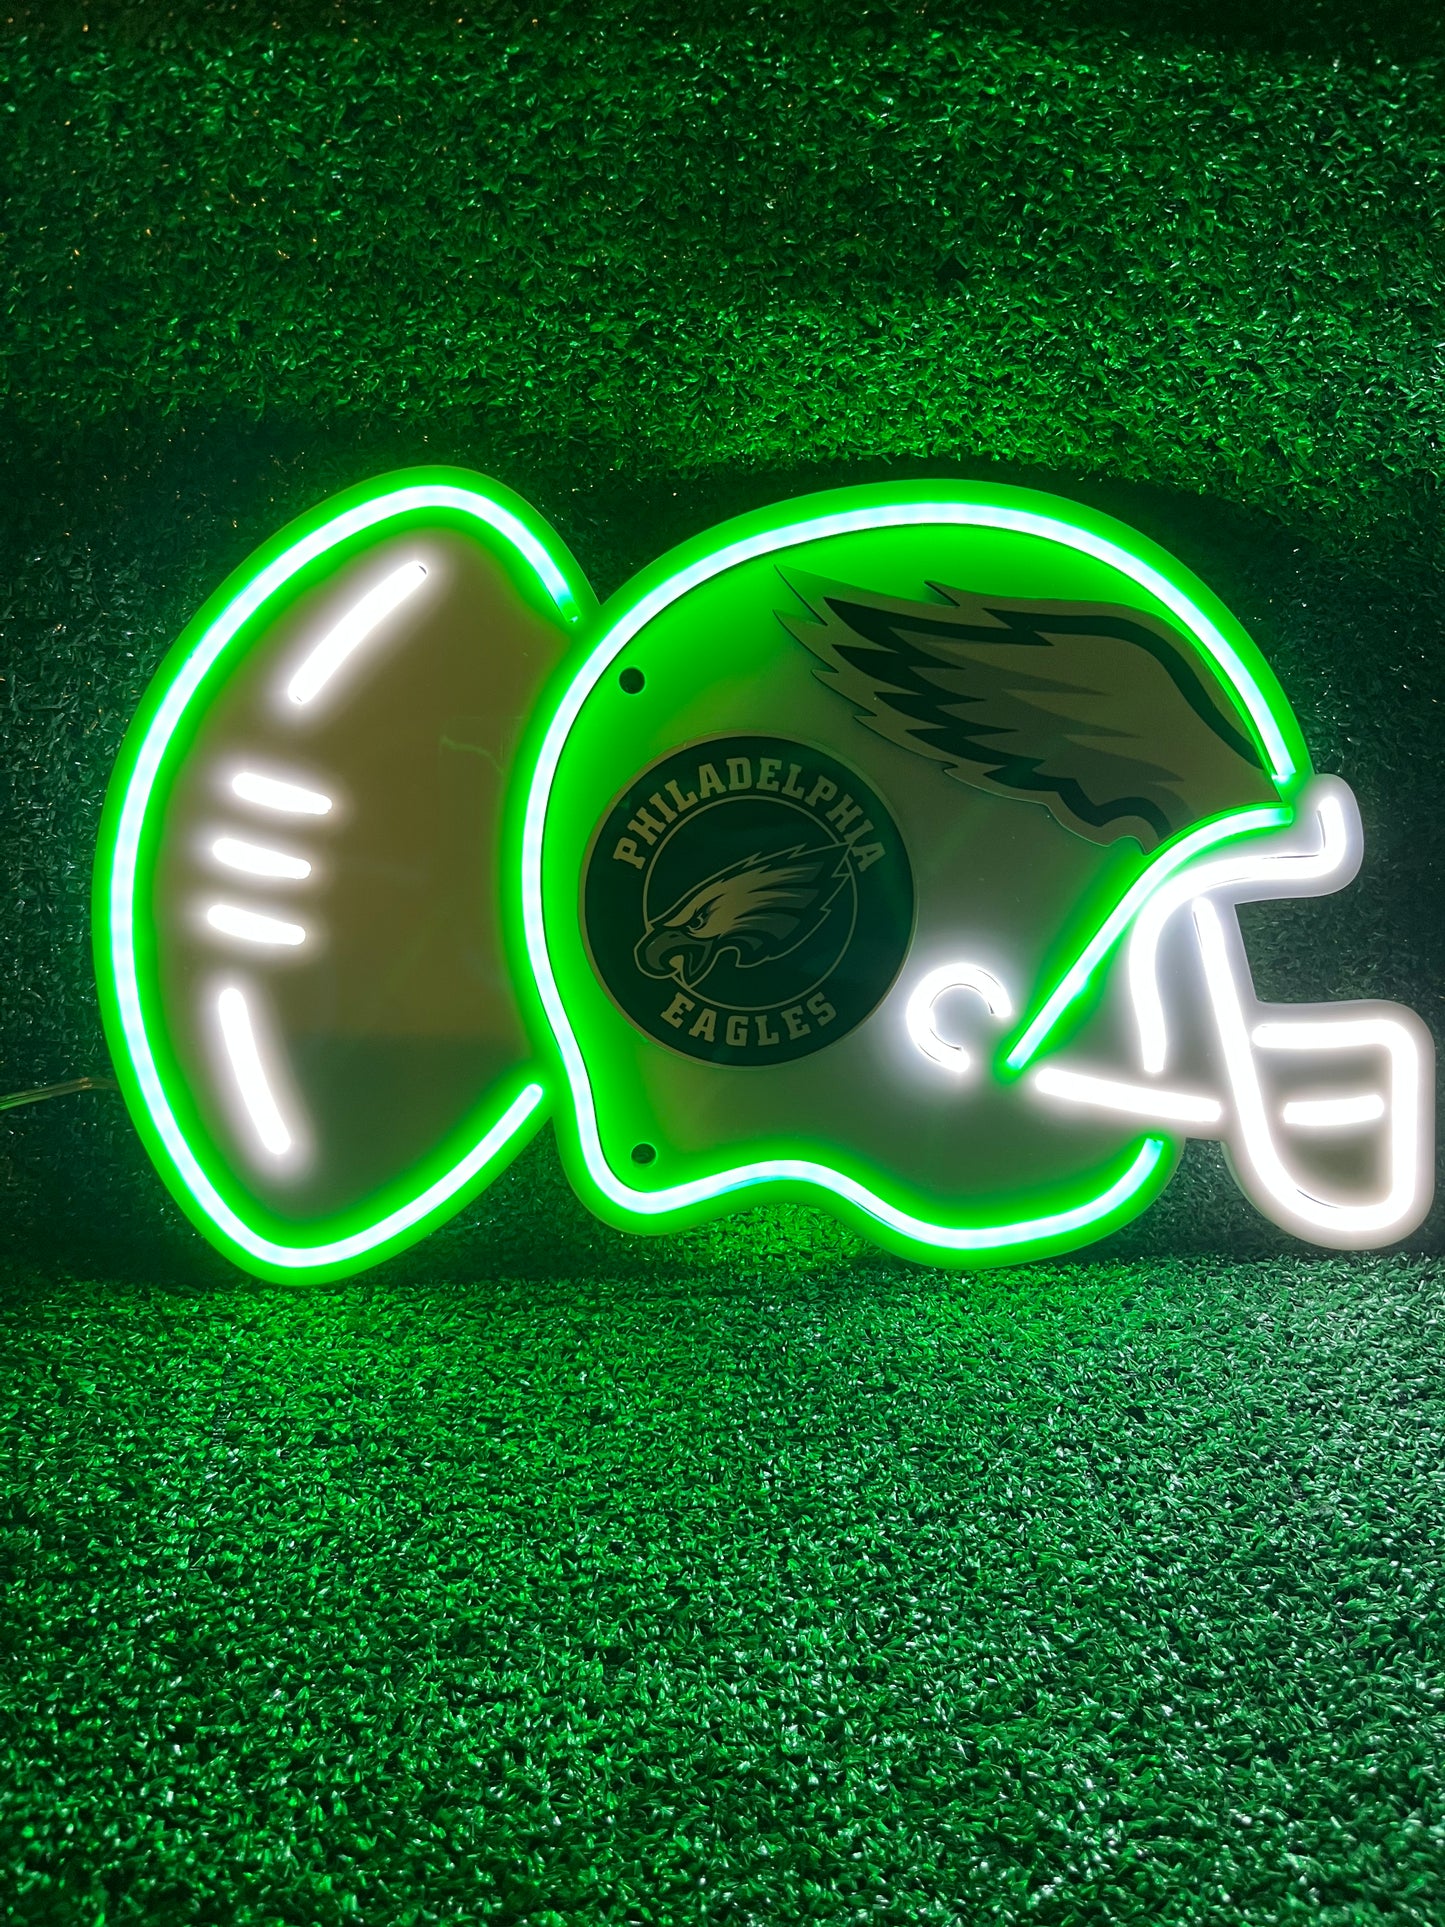 Football helmet Neon Light | Press On Us, LLC